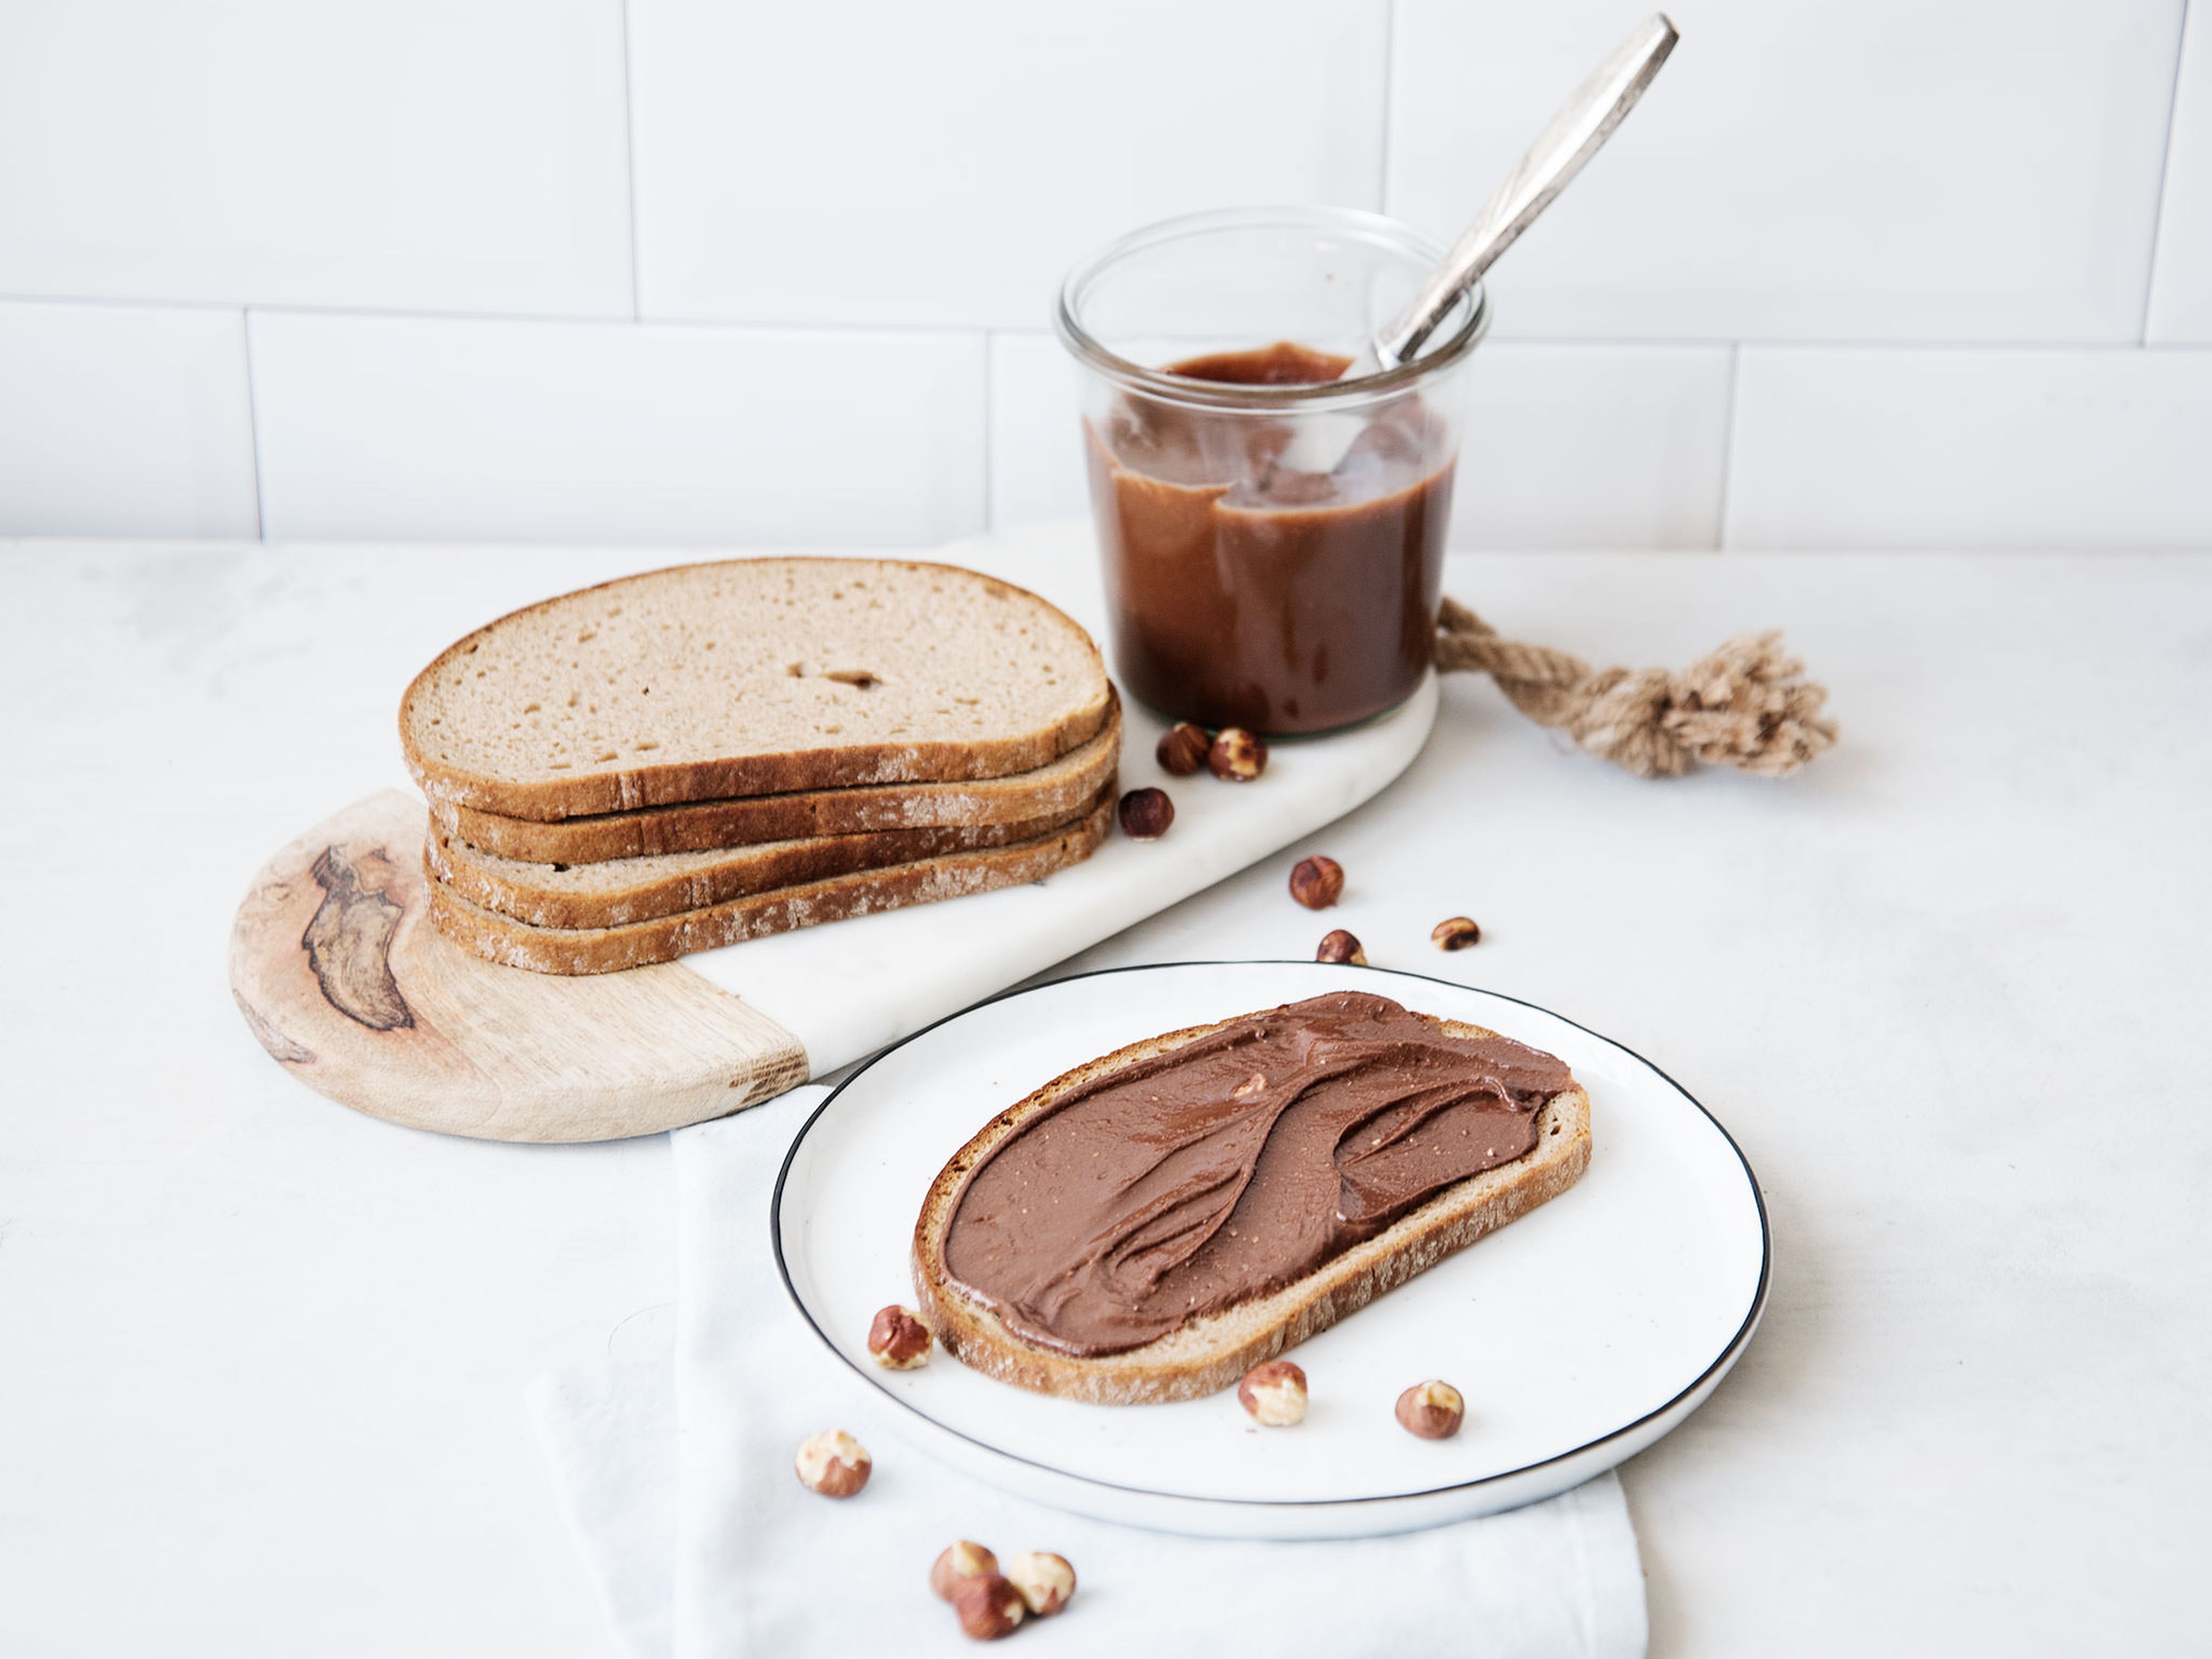 DIY chocolate-hazelnut spread